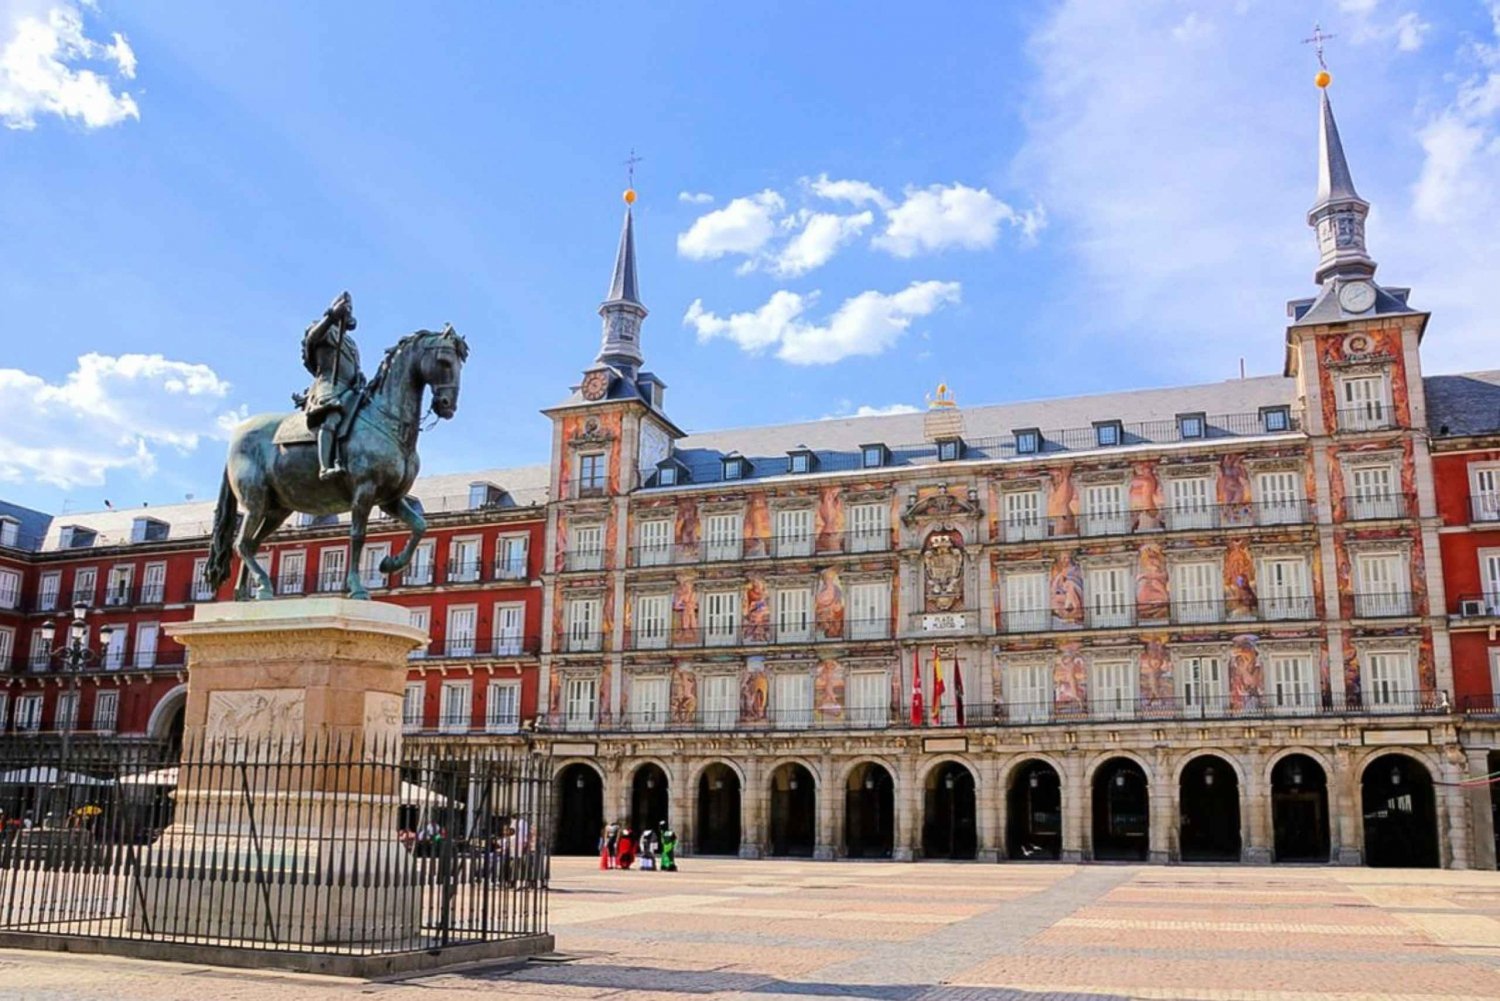 Madryt: gra o eksploracji Starego Miasta